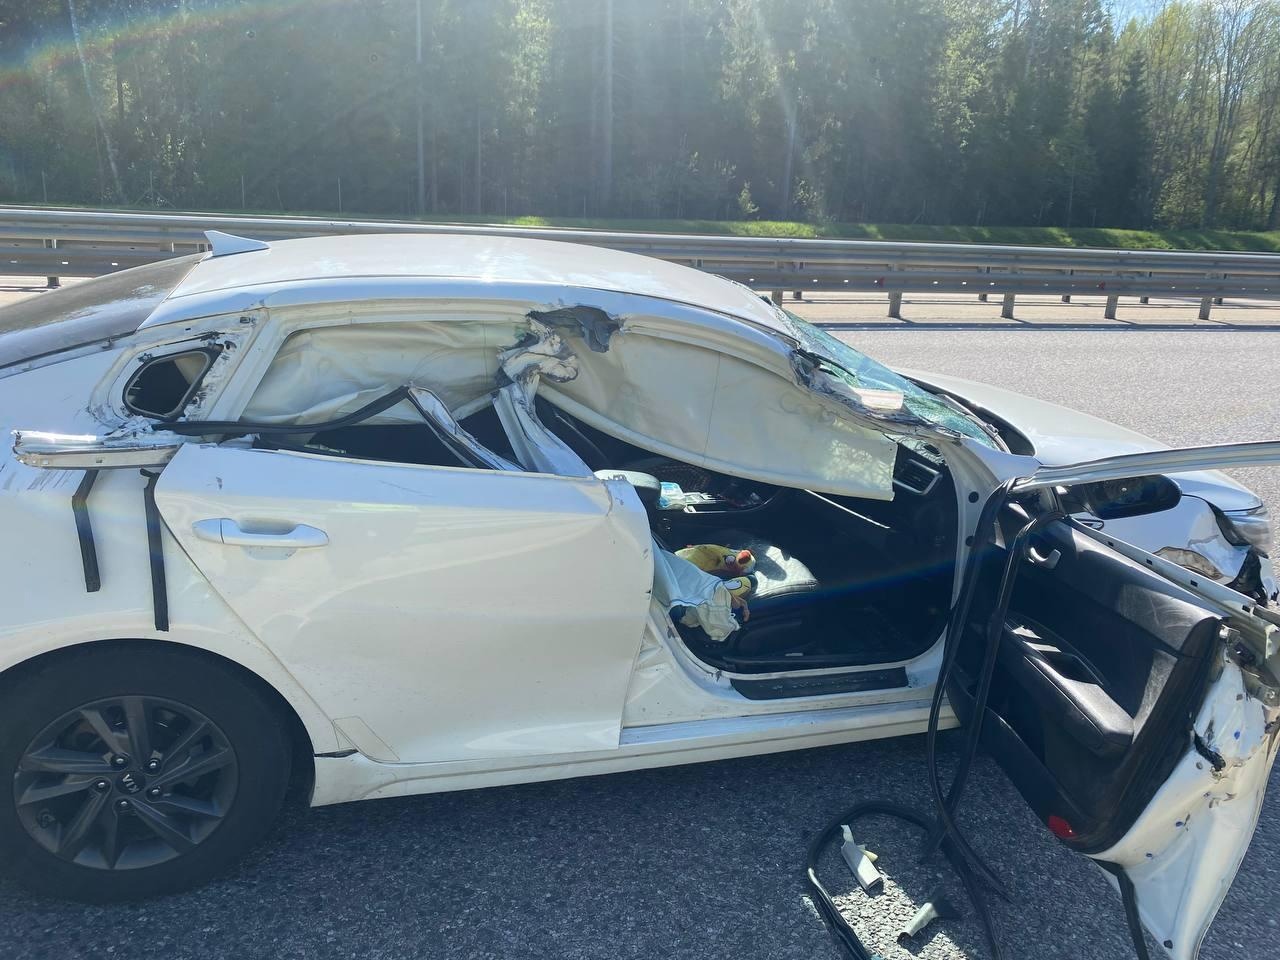 Не пристегнутый ремнем безопасности пассажир легковушки погиб в ДТП на М11 в Тверской области